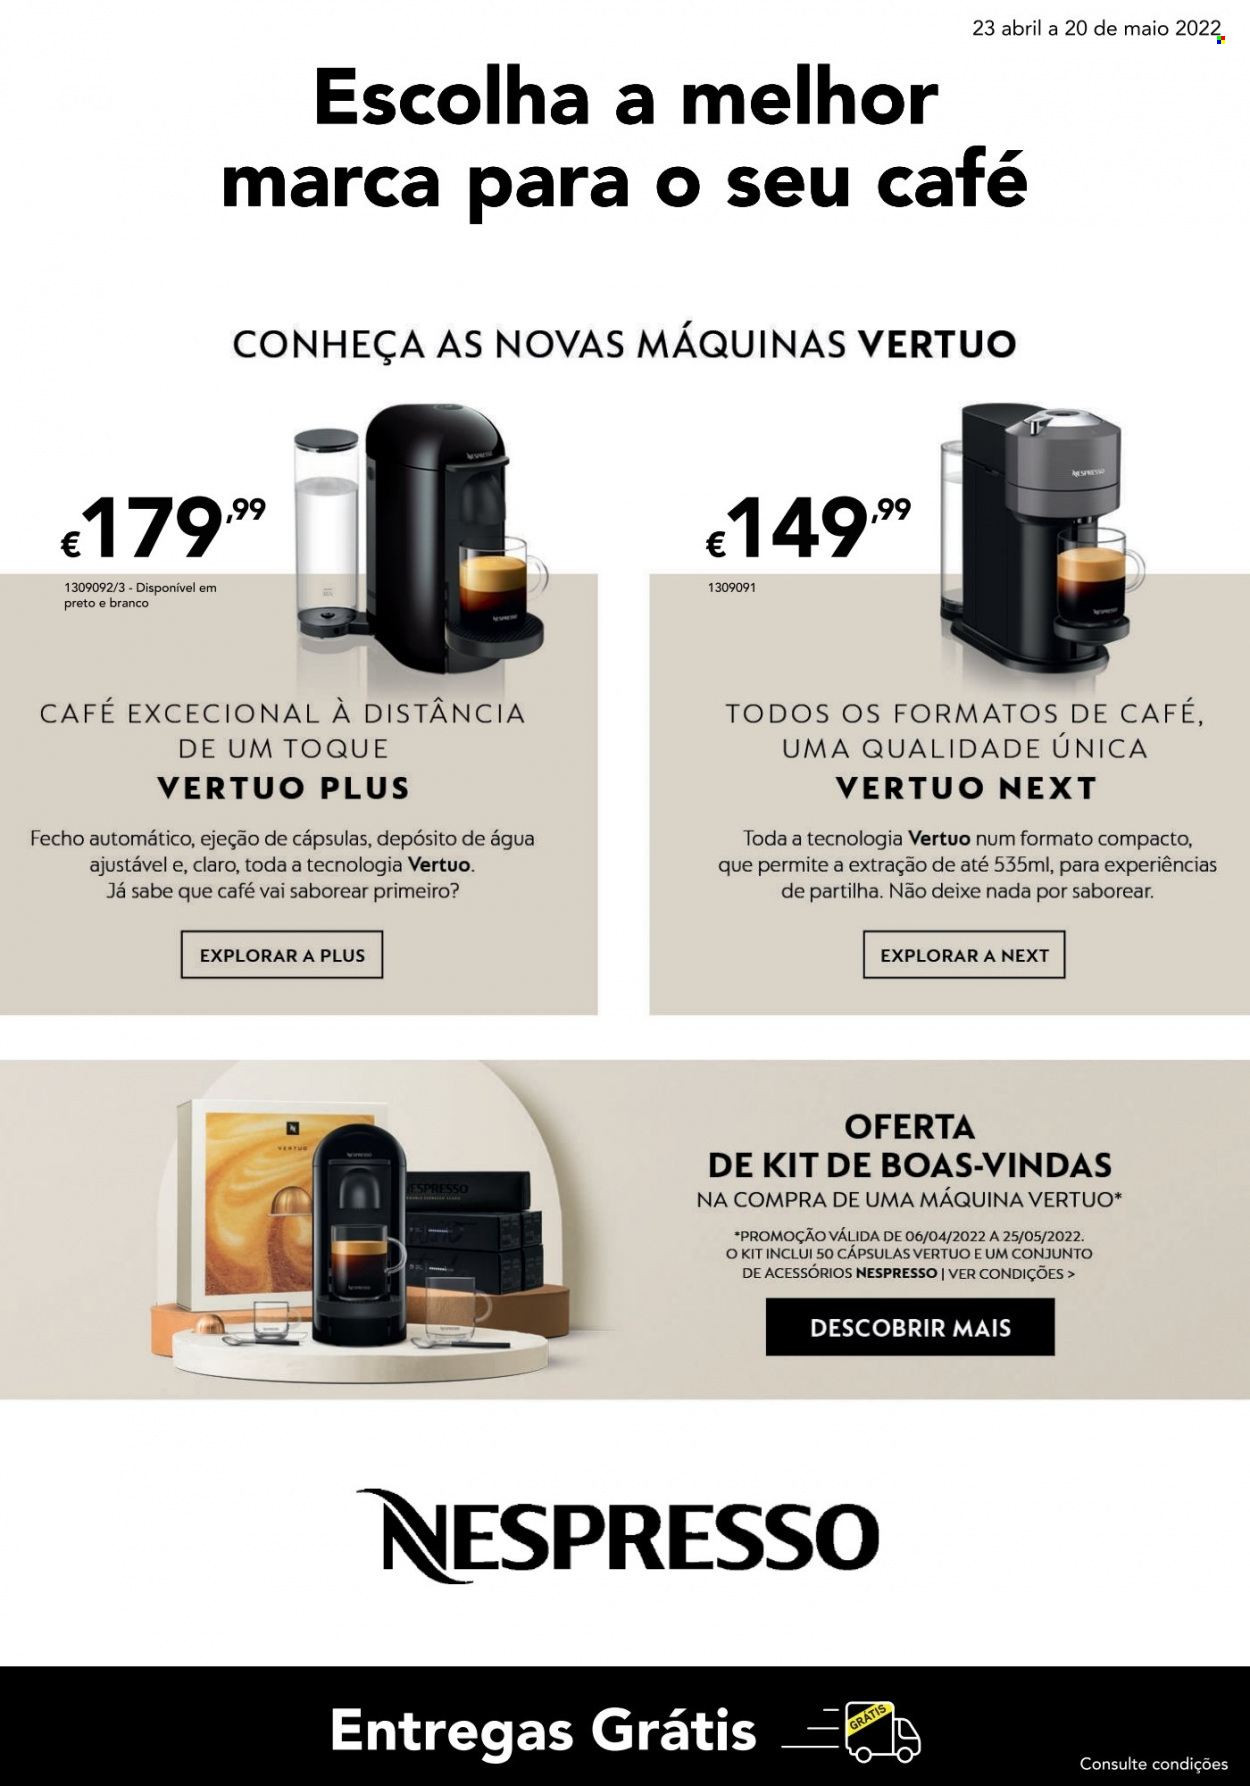 Folheto Radio Popular - 23.4.2022 - 20.5.2022 - Produtos em promoção - Nespresso. Página 13.